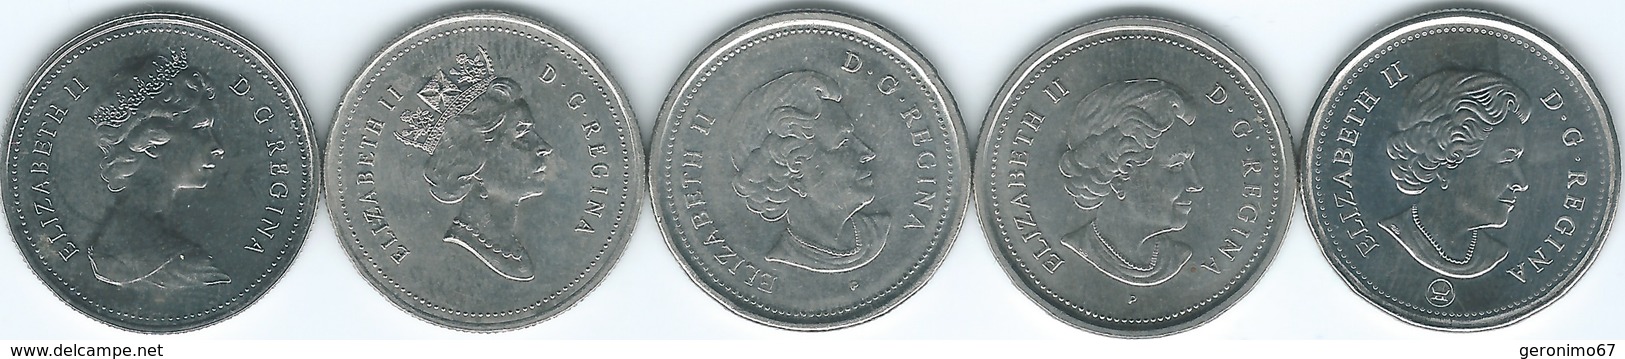 Canada - 25 Cents - 1979 (KM74) 1990 (KM184) 2003 (KM184b) 2005 & 2017 (KM493 - With/Without Mintmark) - Canada